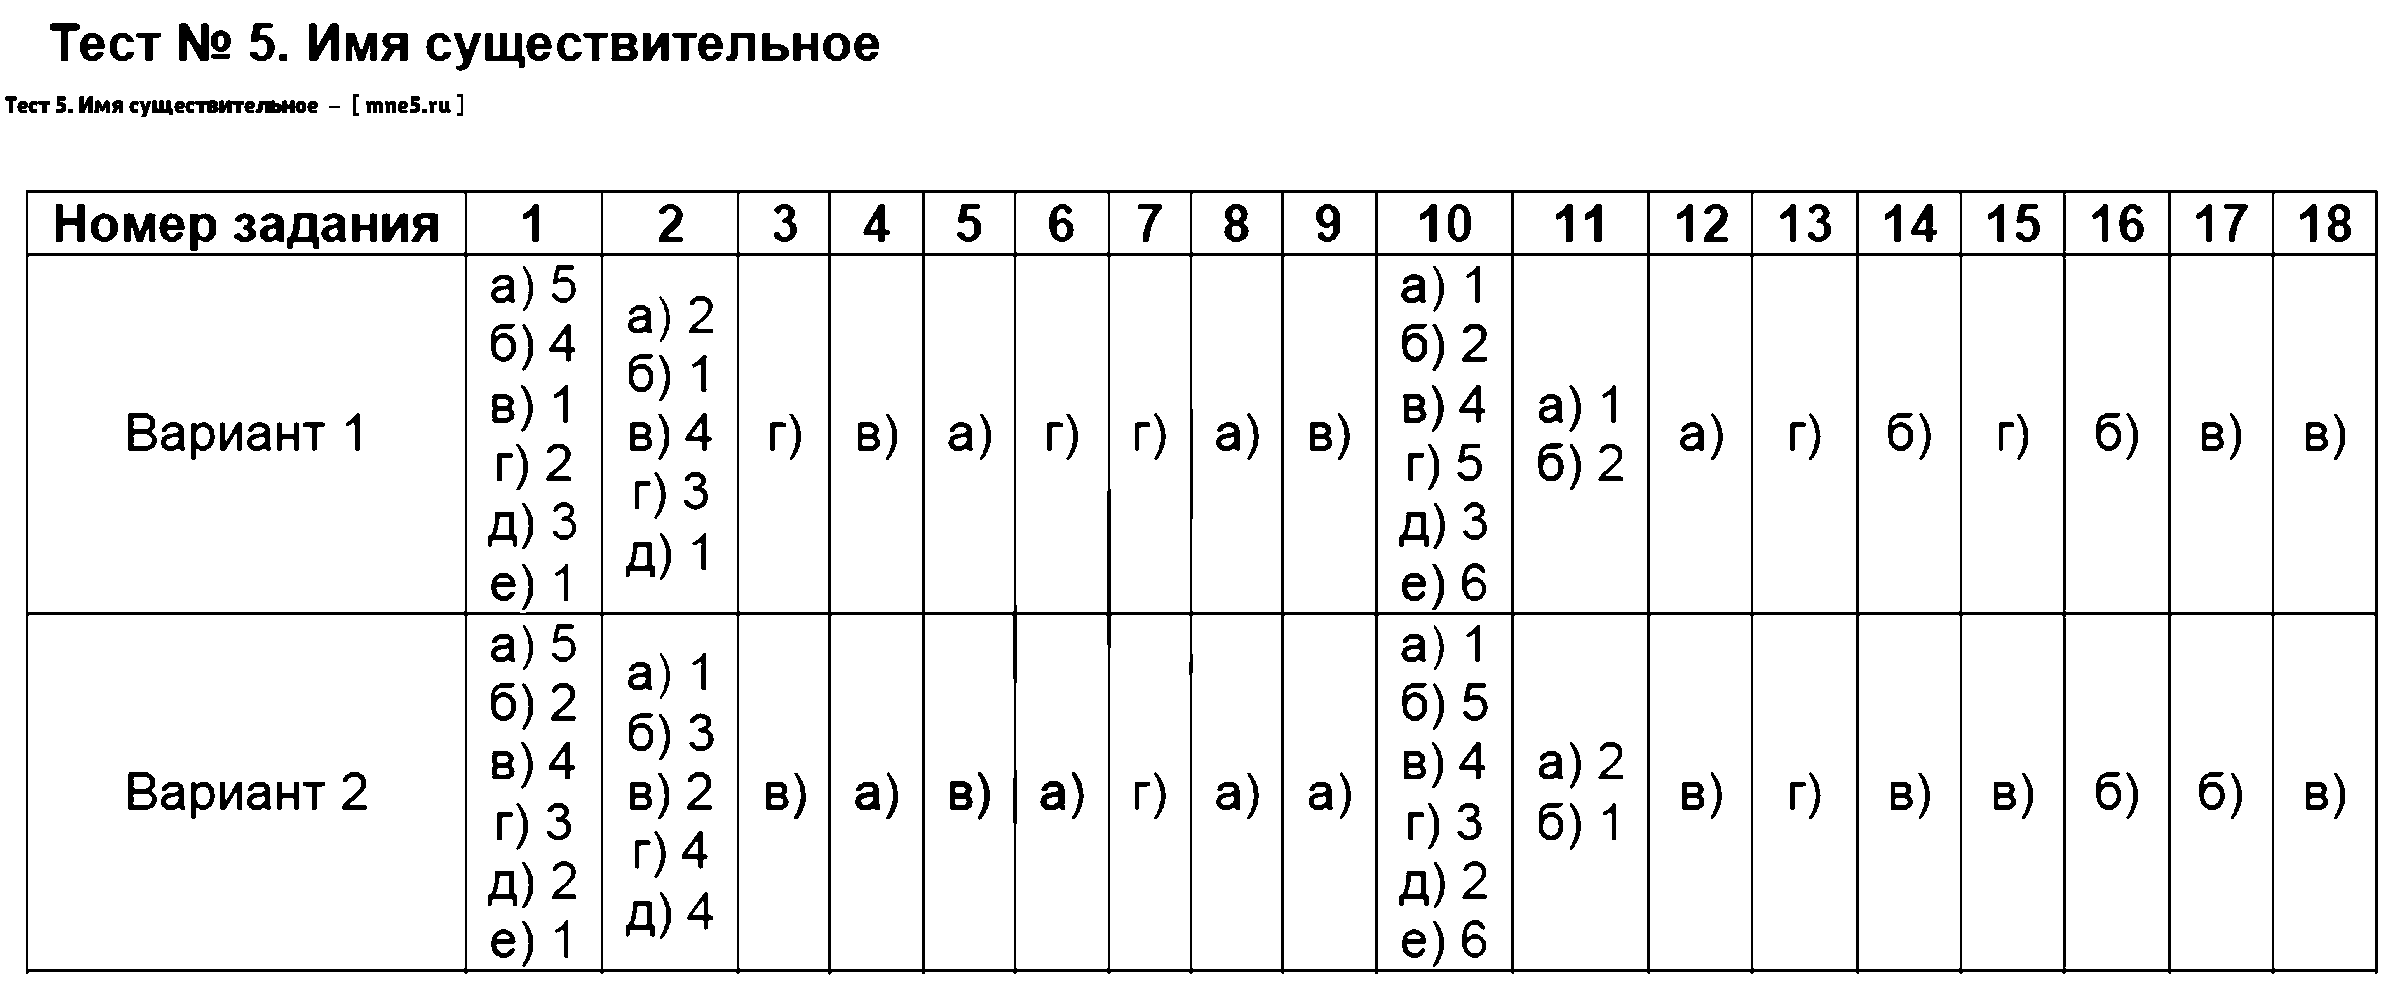 ГДЗ Русский язык 6 класс - Тест 5. Имя существительное